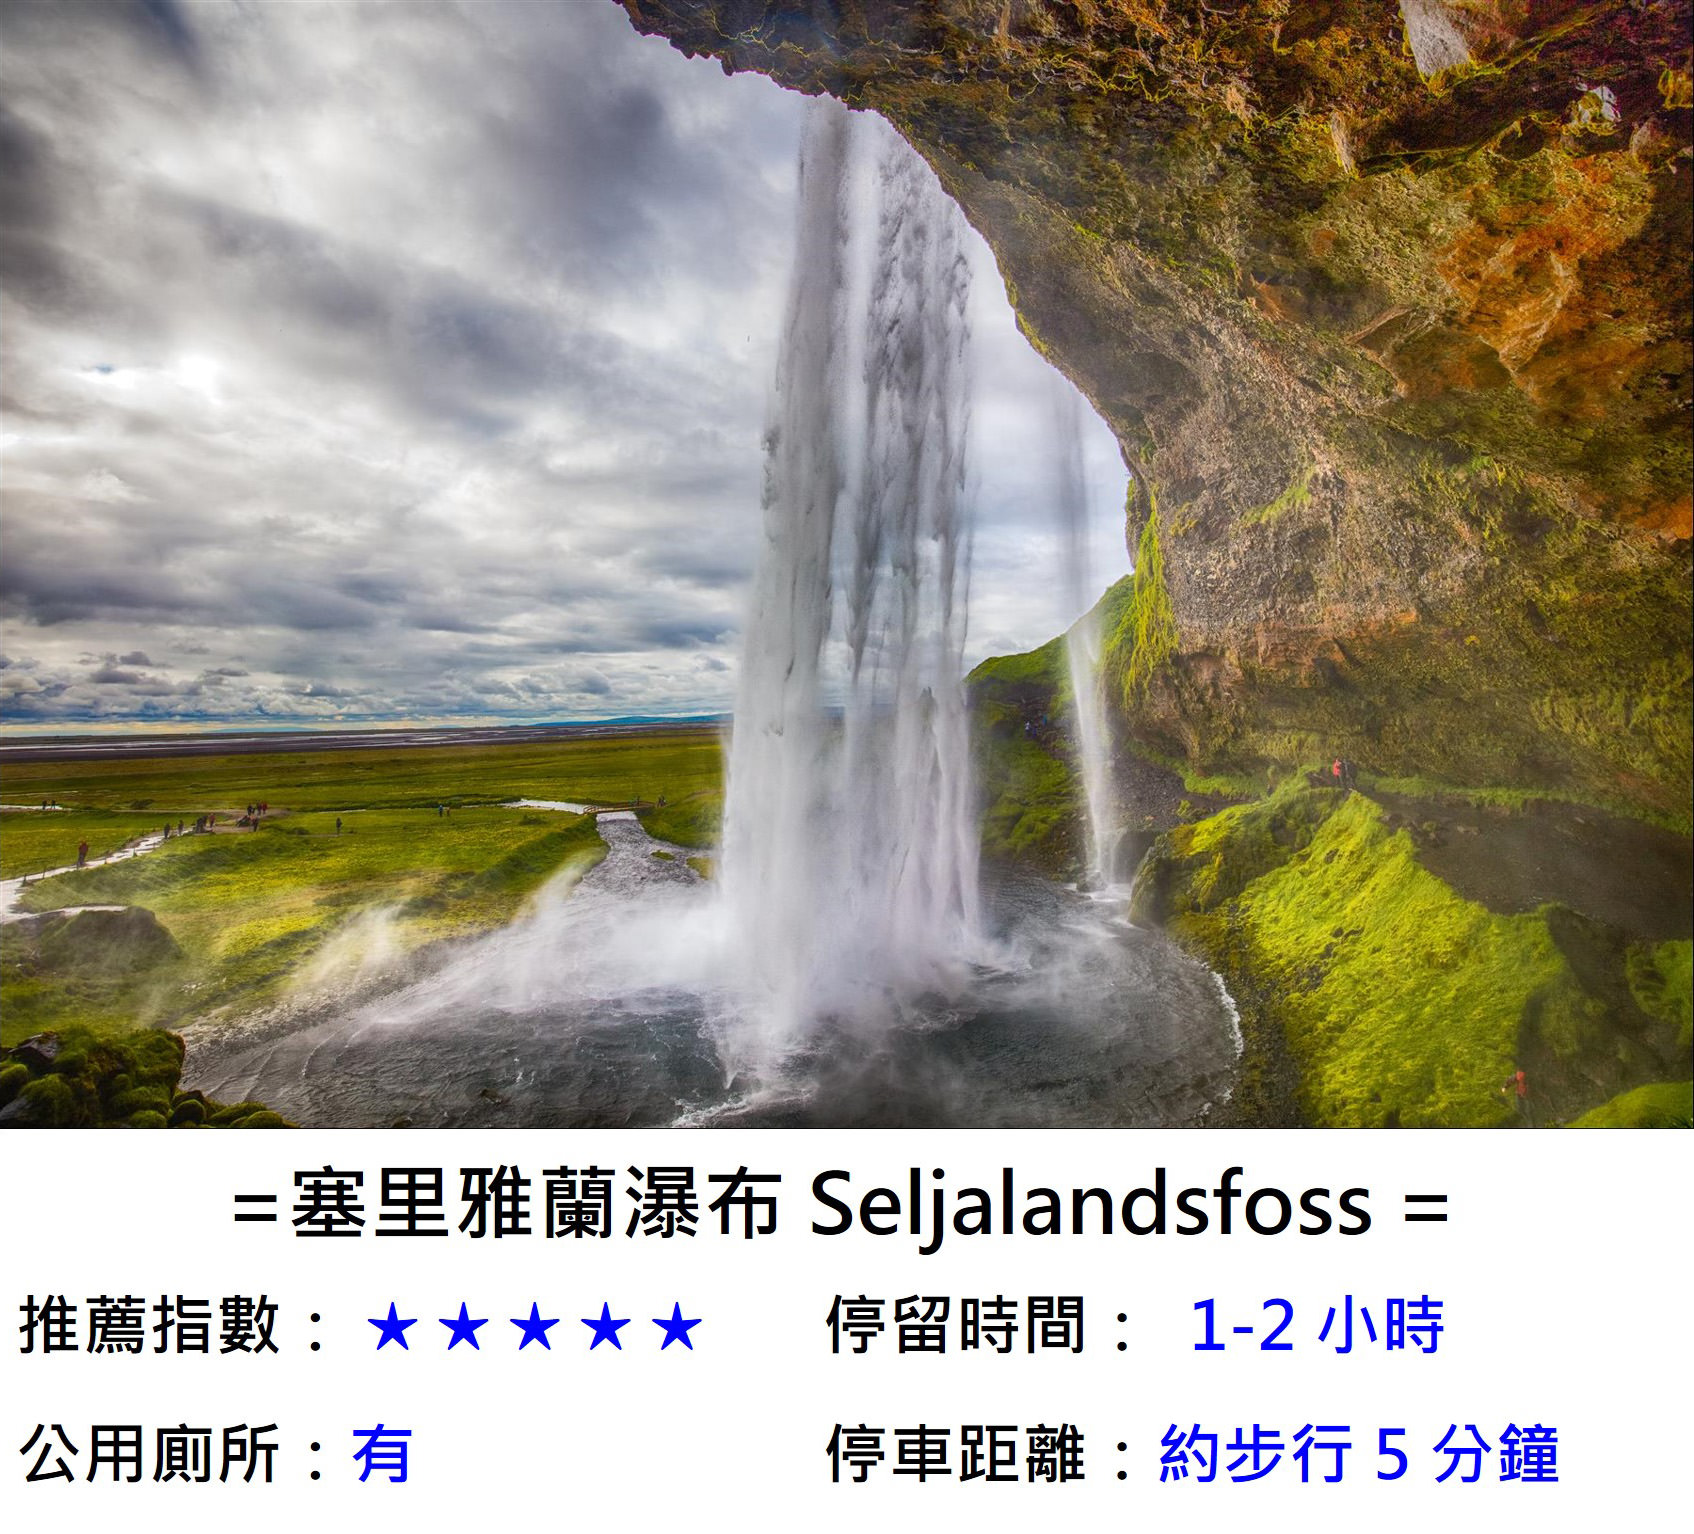 [冰島/規畫] 冰島 3 天 2 夜行程規劃 , 金圈景點、南部二大瀑布、黑沙灘